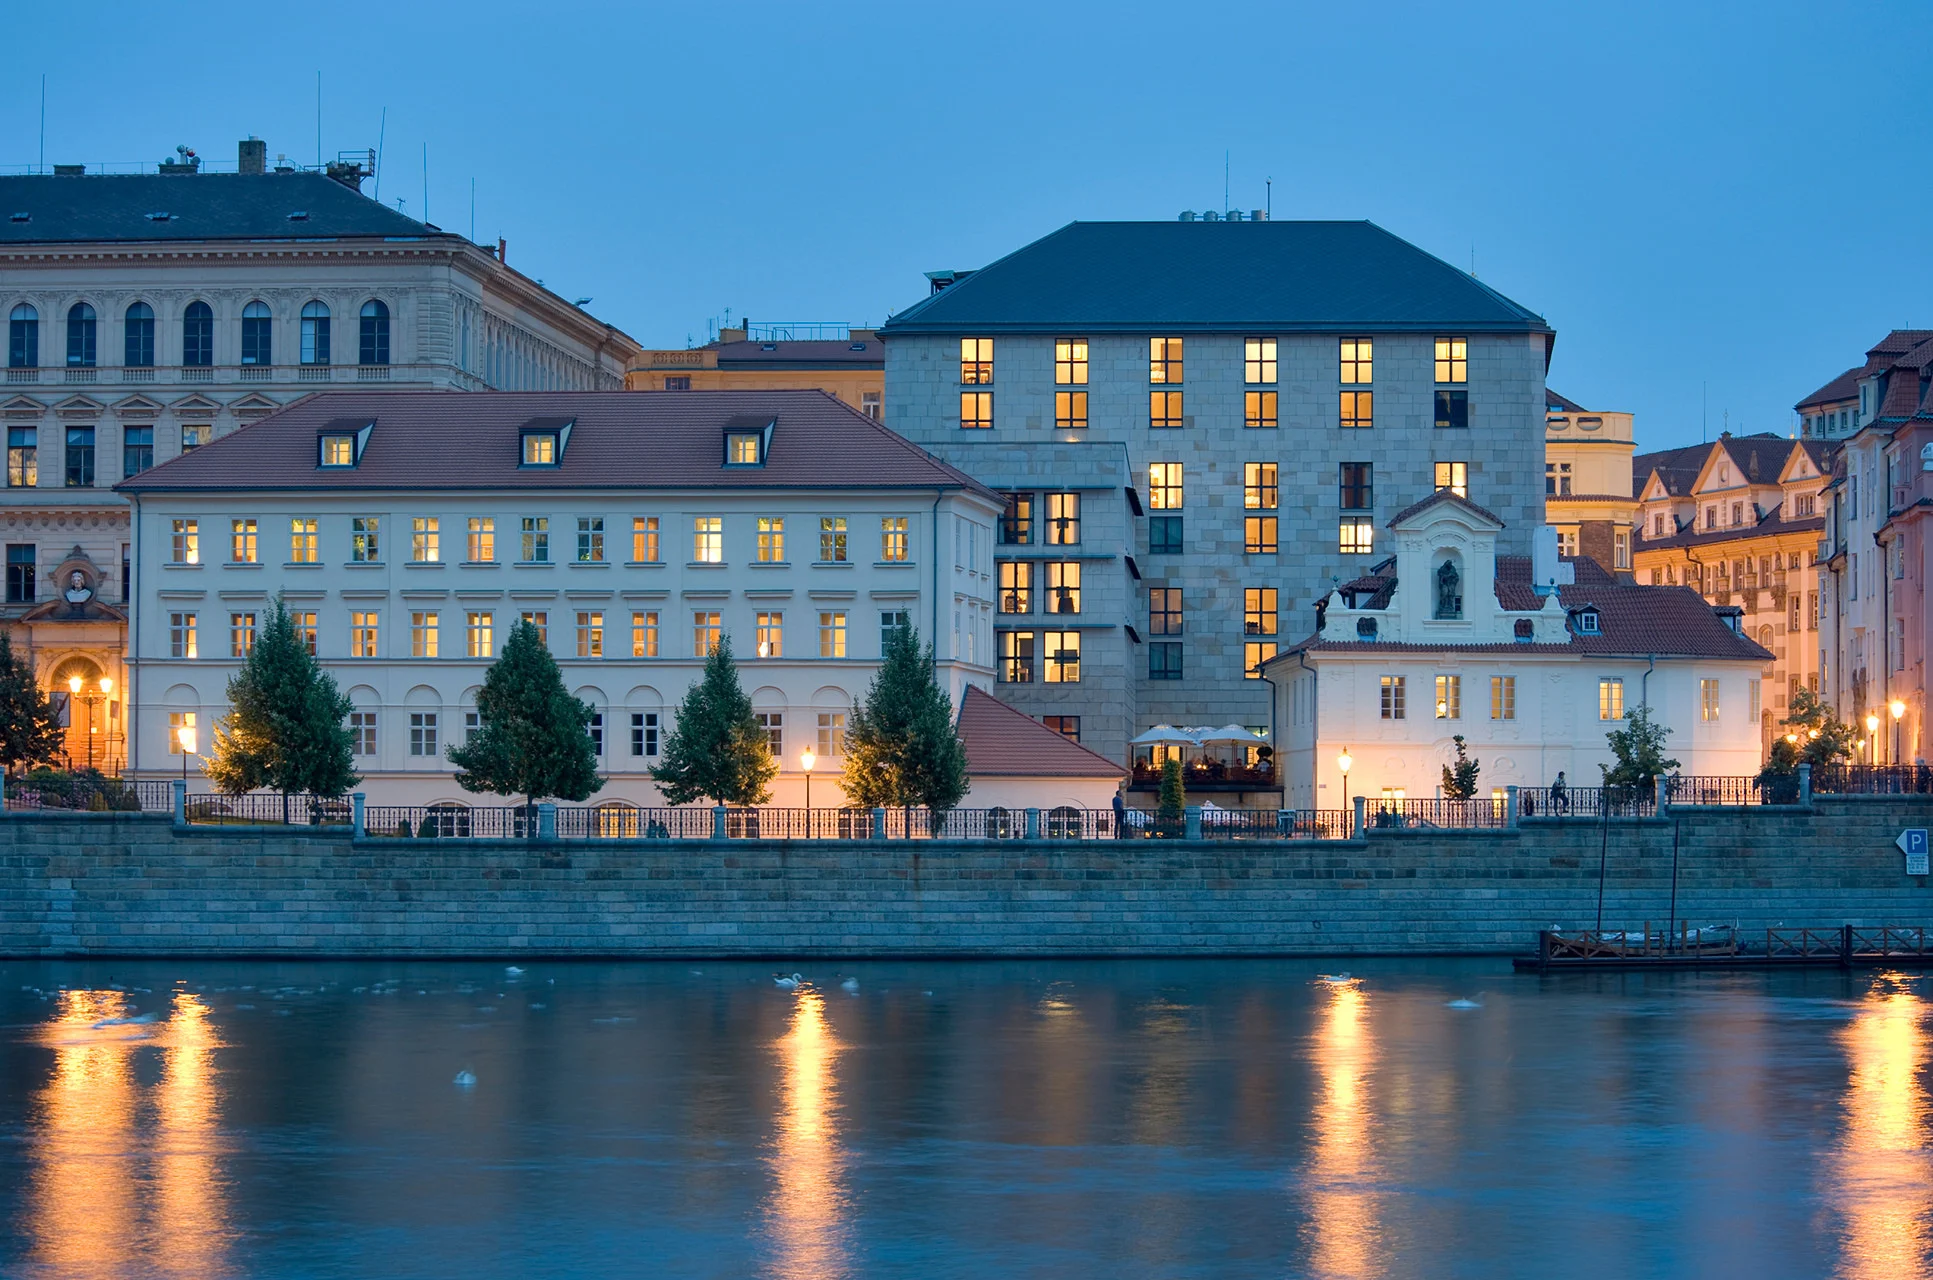 מלון ארבע העונות. תמונה באדיבות: Four Seasons Prague